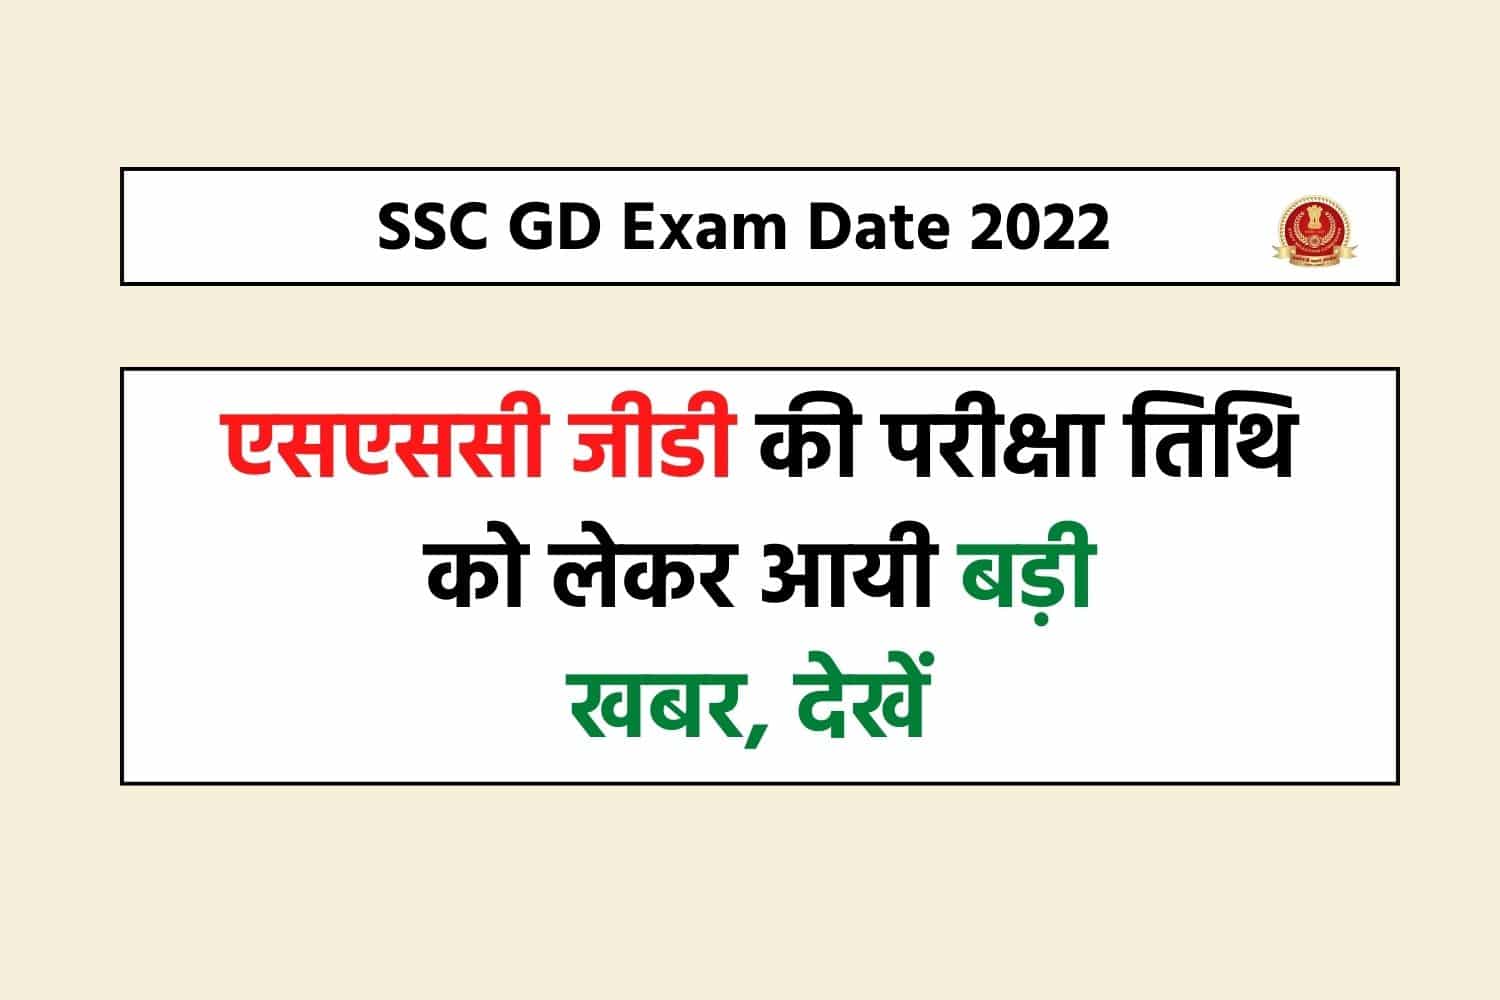 SSC GD Exam Date 2022